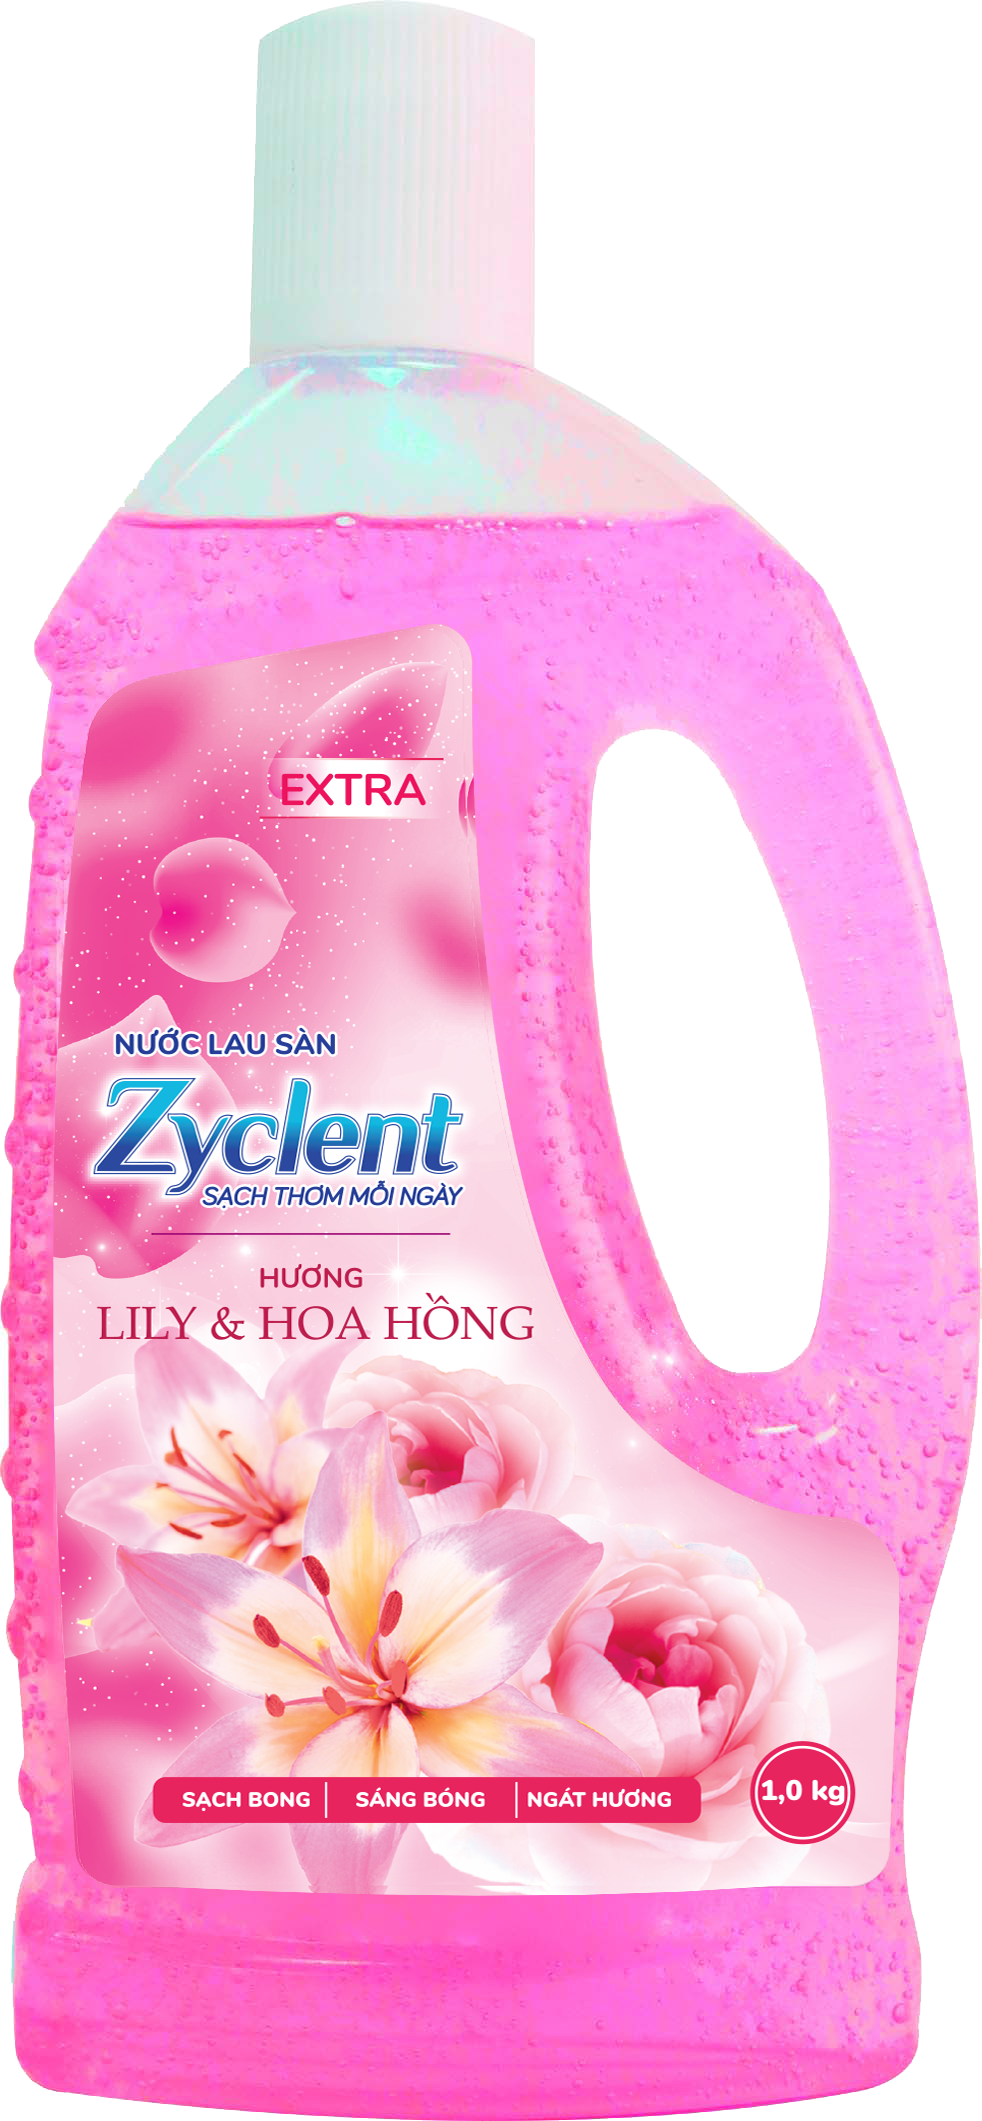 Thùng Nước Lau Sàn ZYCLENT EXTRA Hương Lily &amp; Hoa Hồng - (1KG x 12 CHAI)